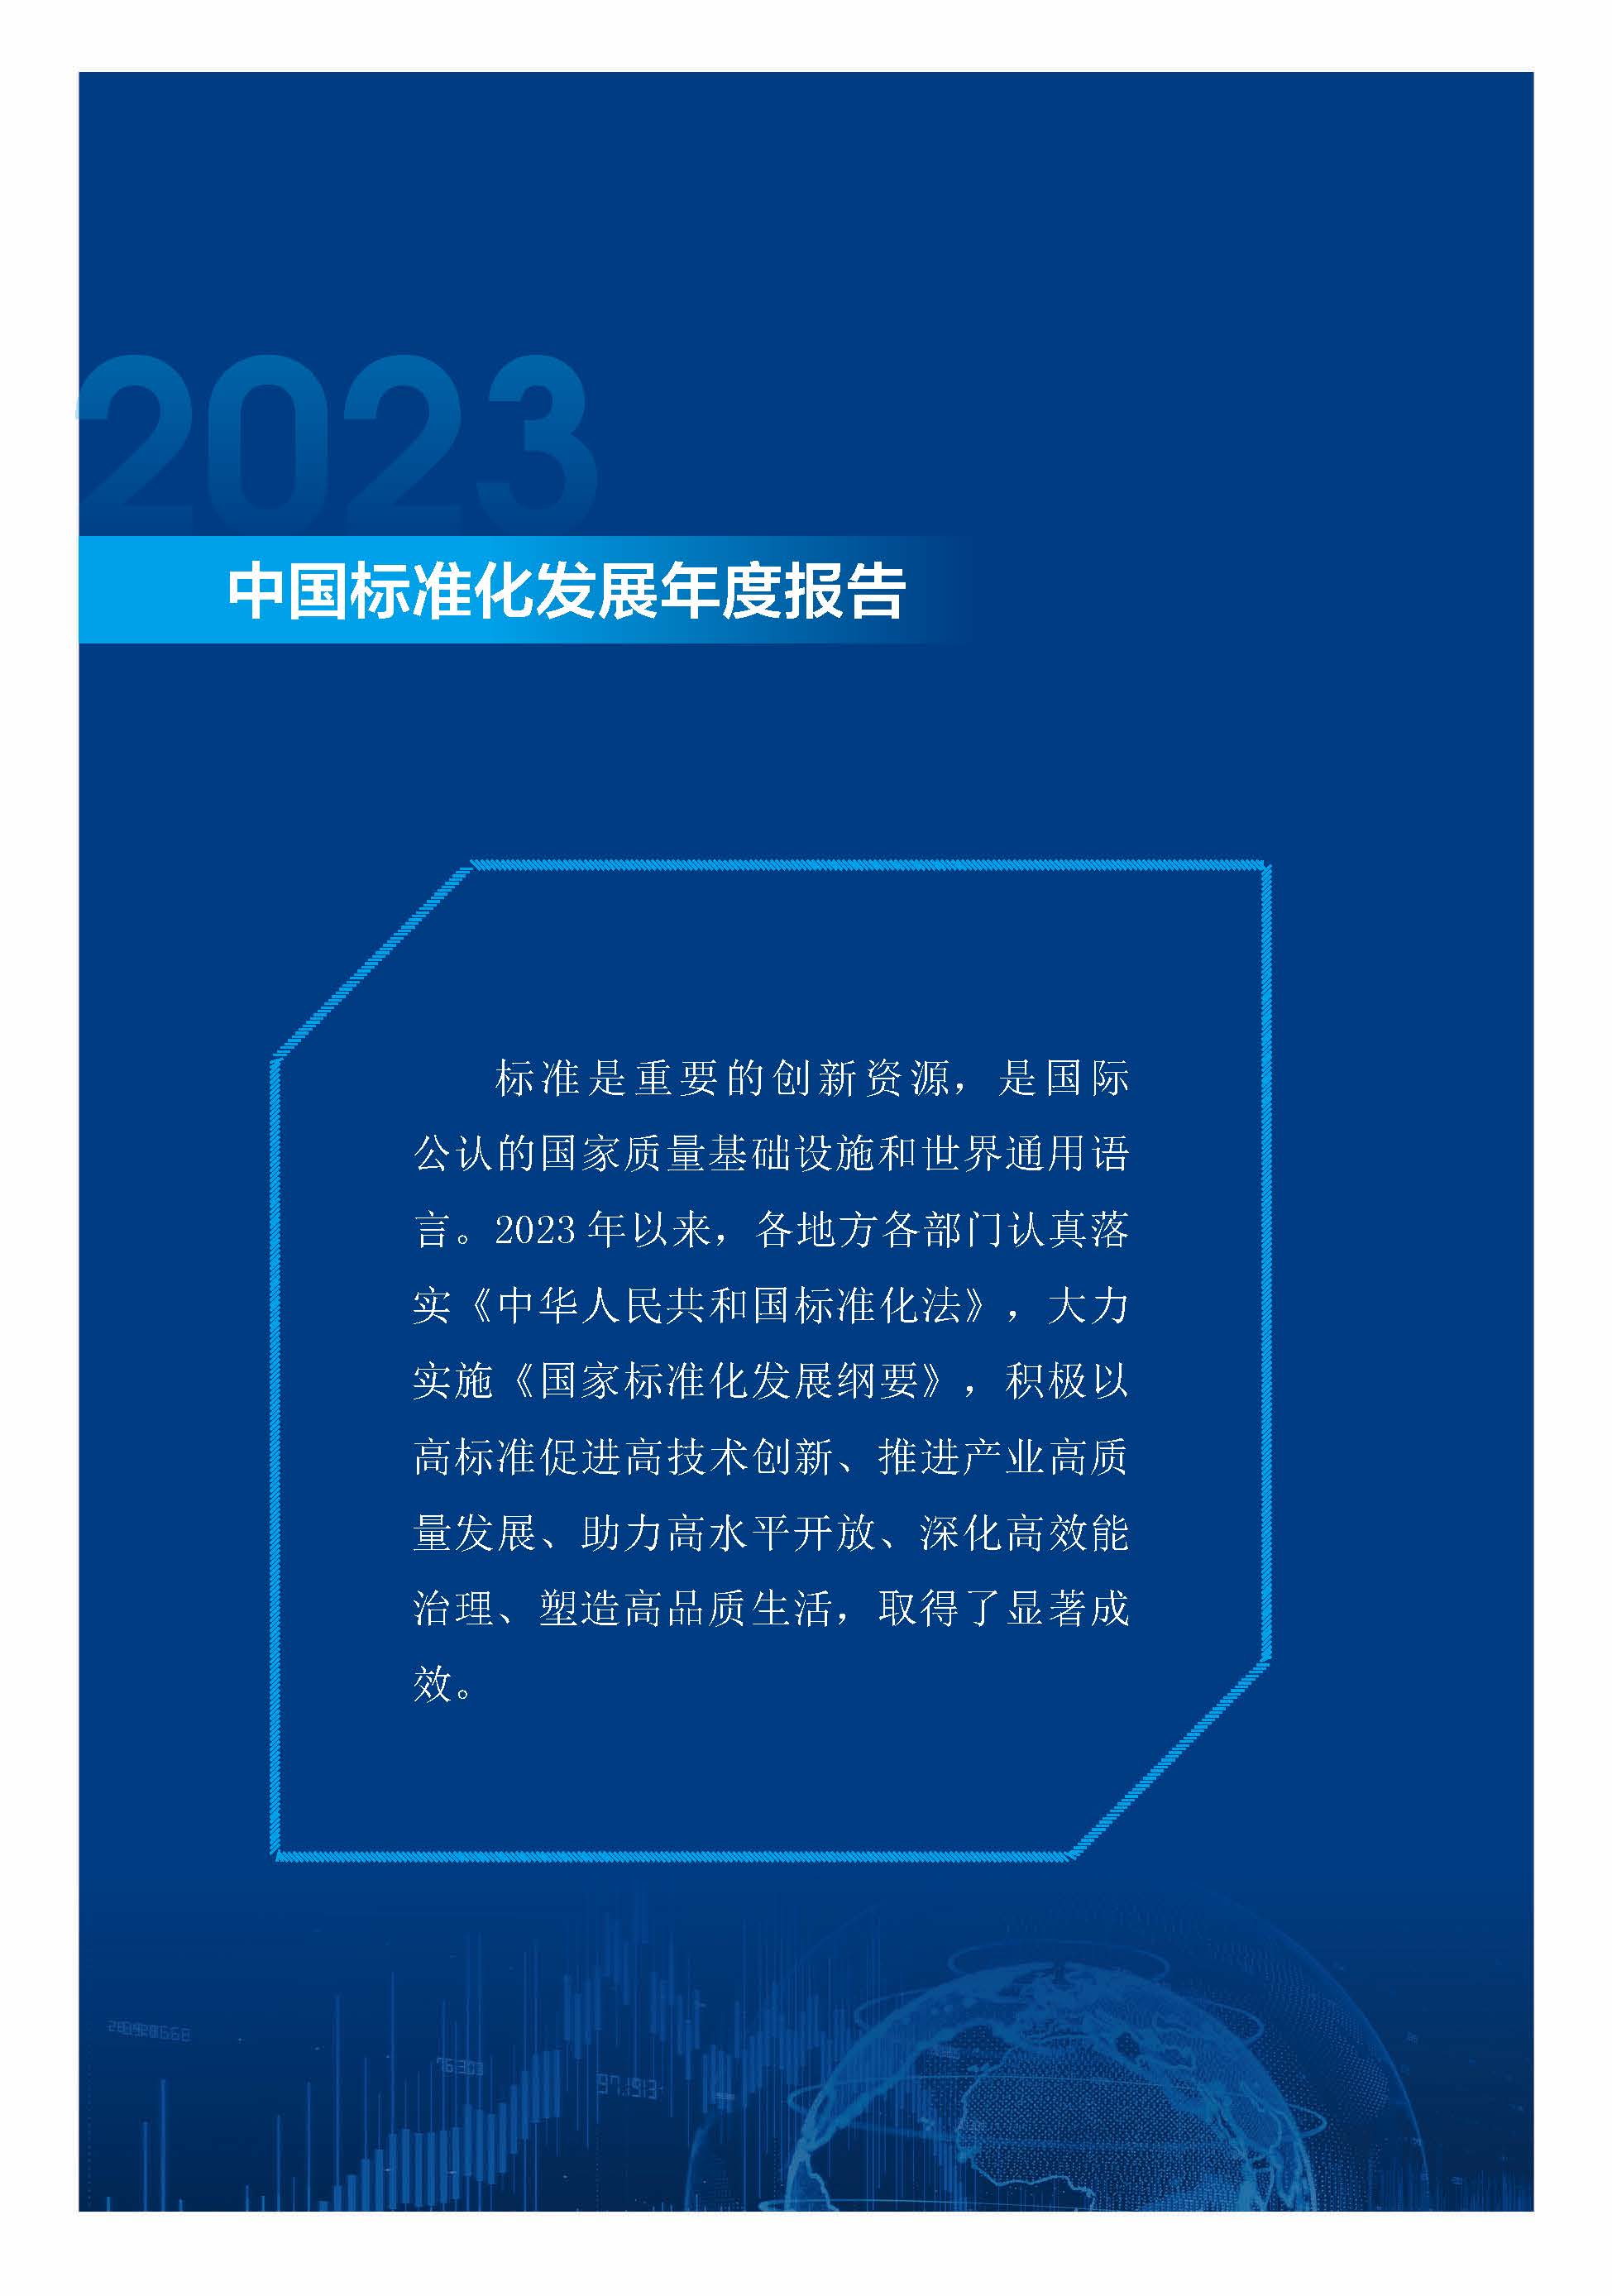 《中国标准化发展年度报告（2023年）》_页面_05.jpg